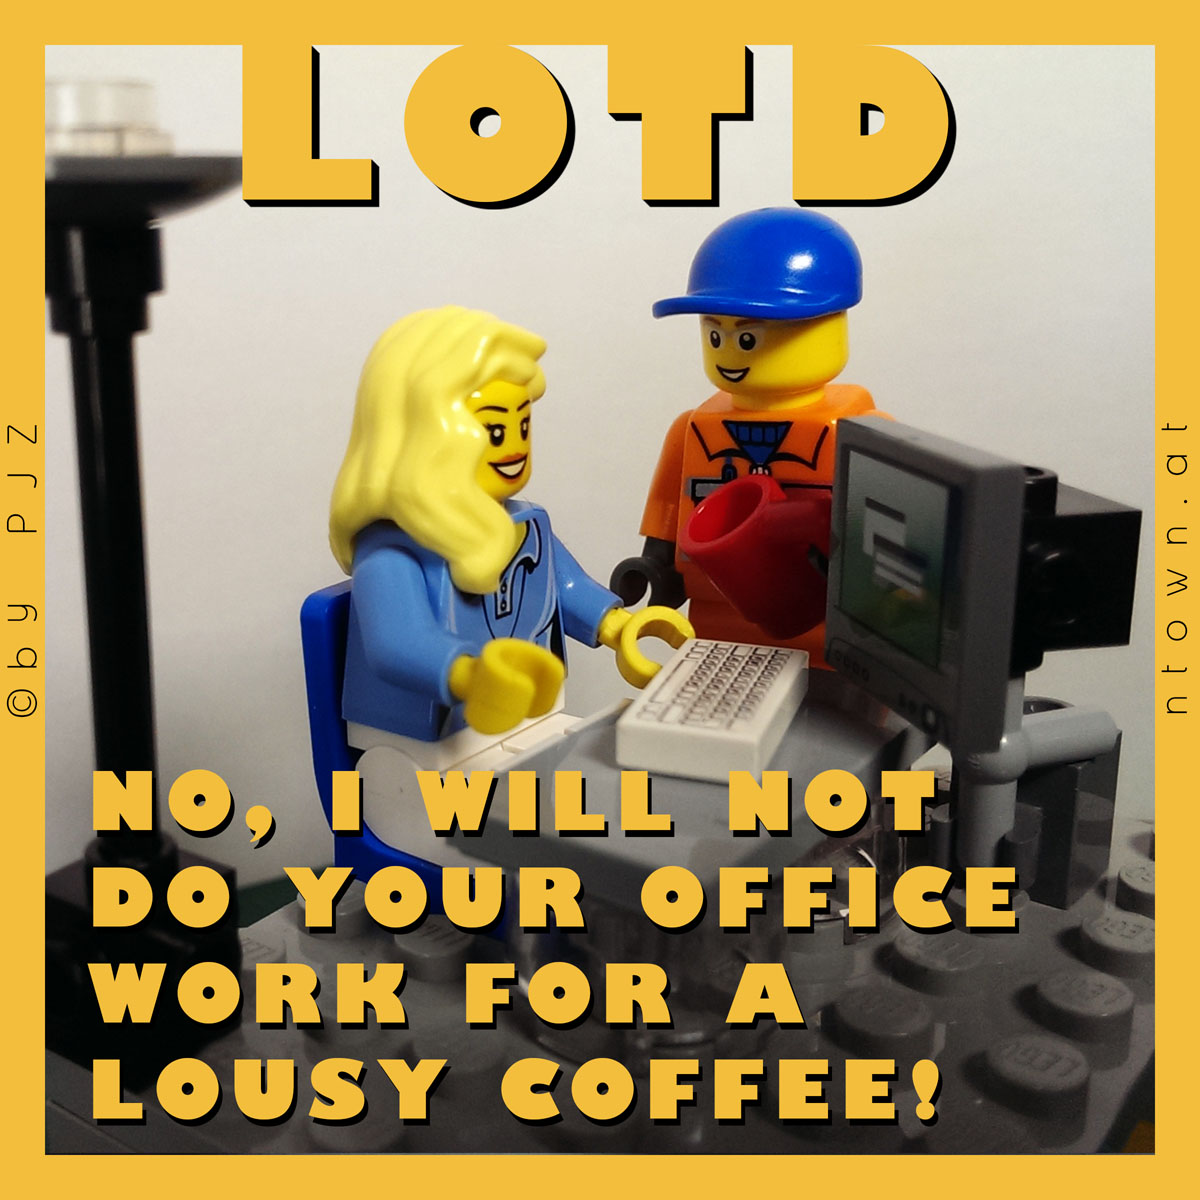 LOTD - 2014-01-09 - Officework